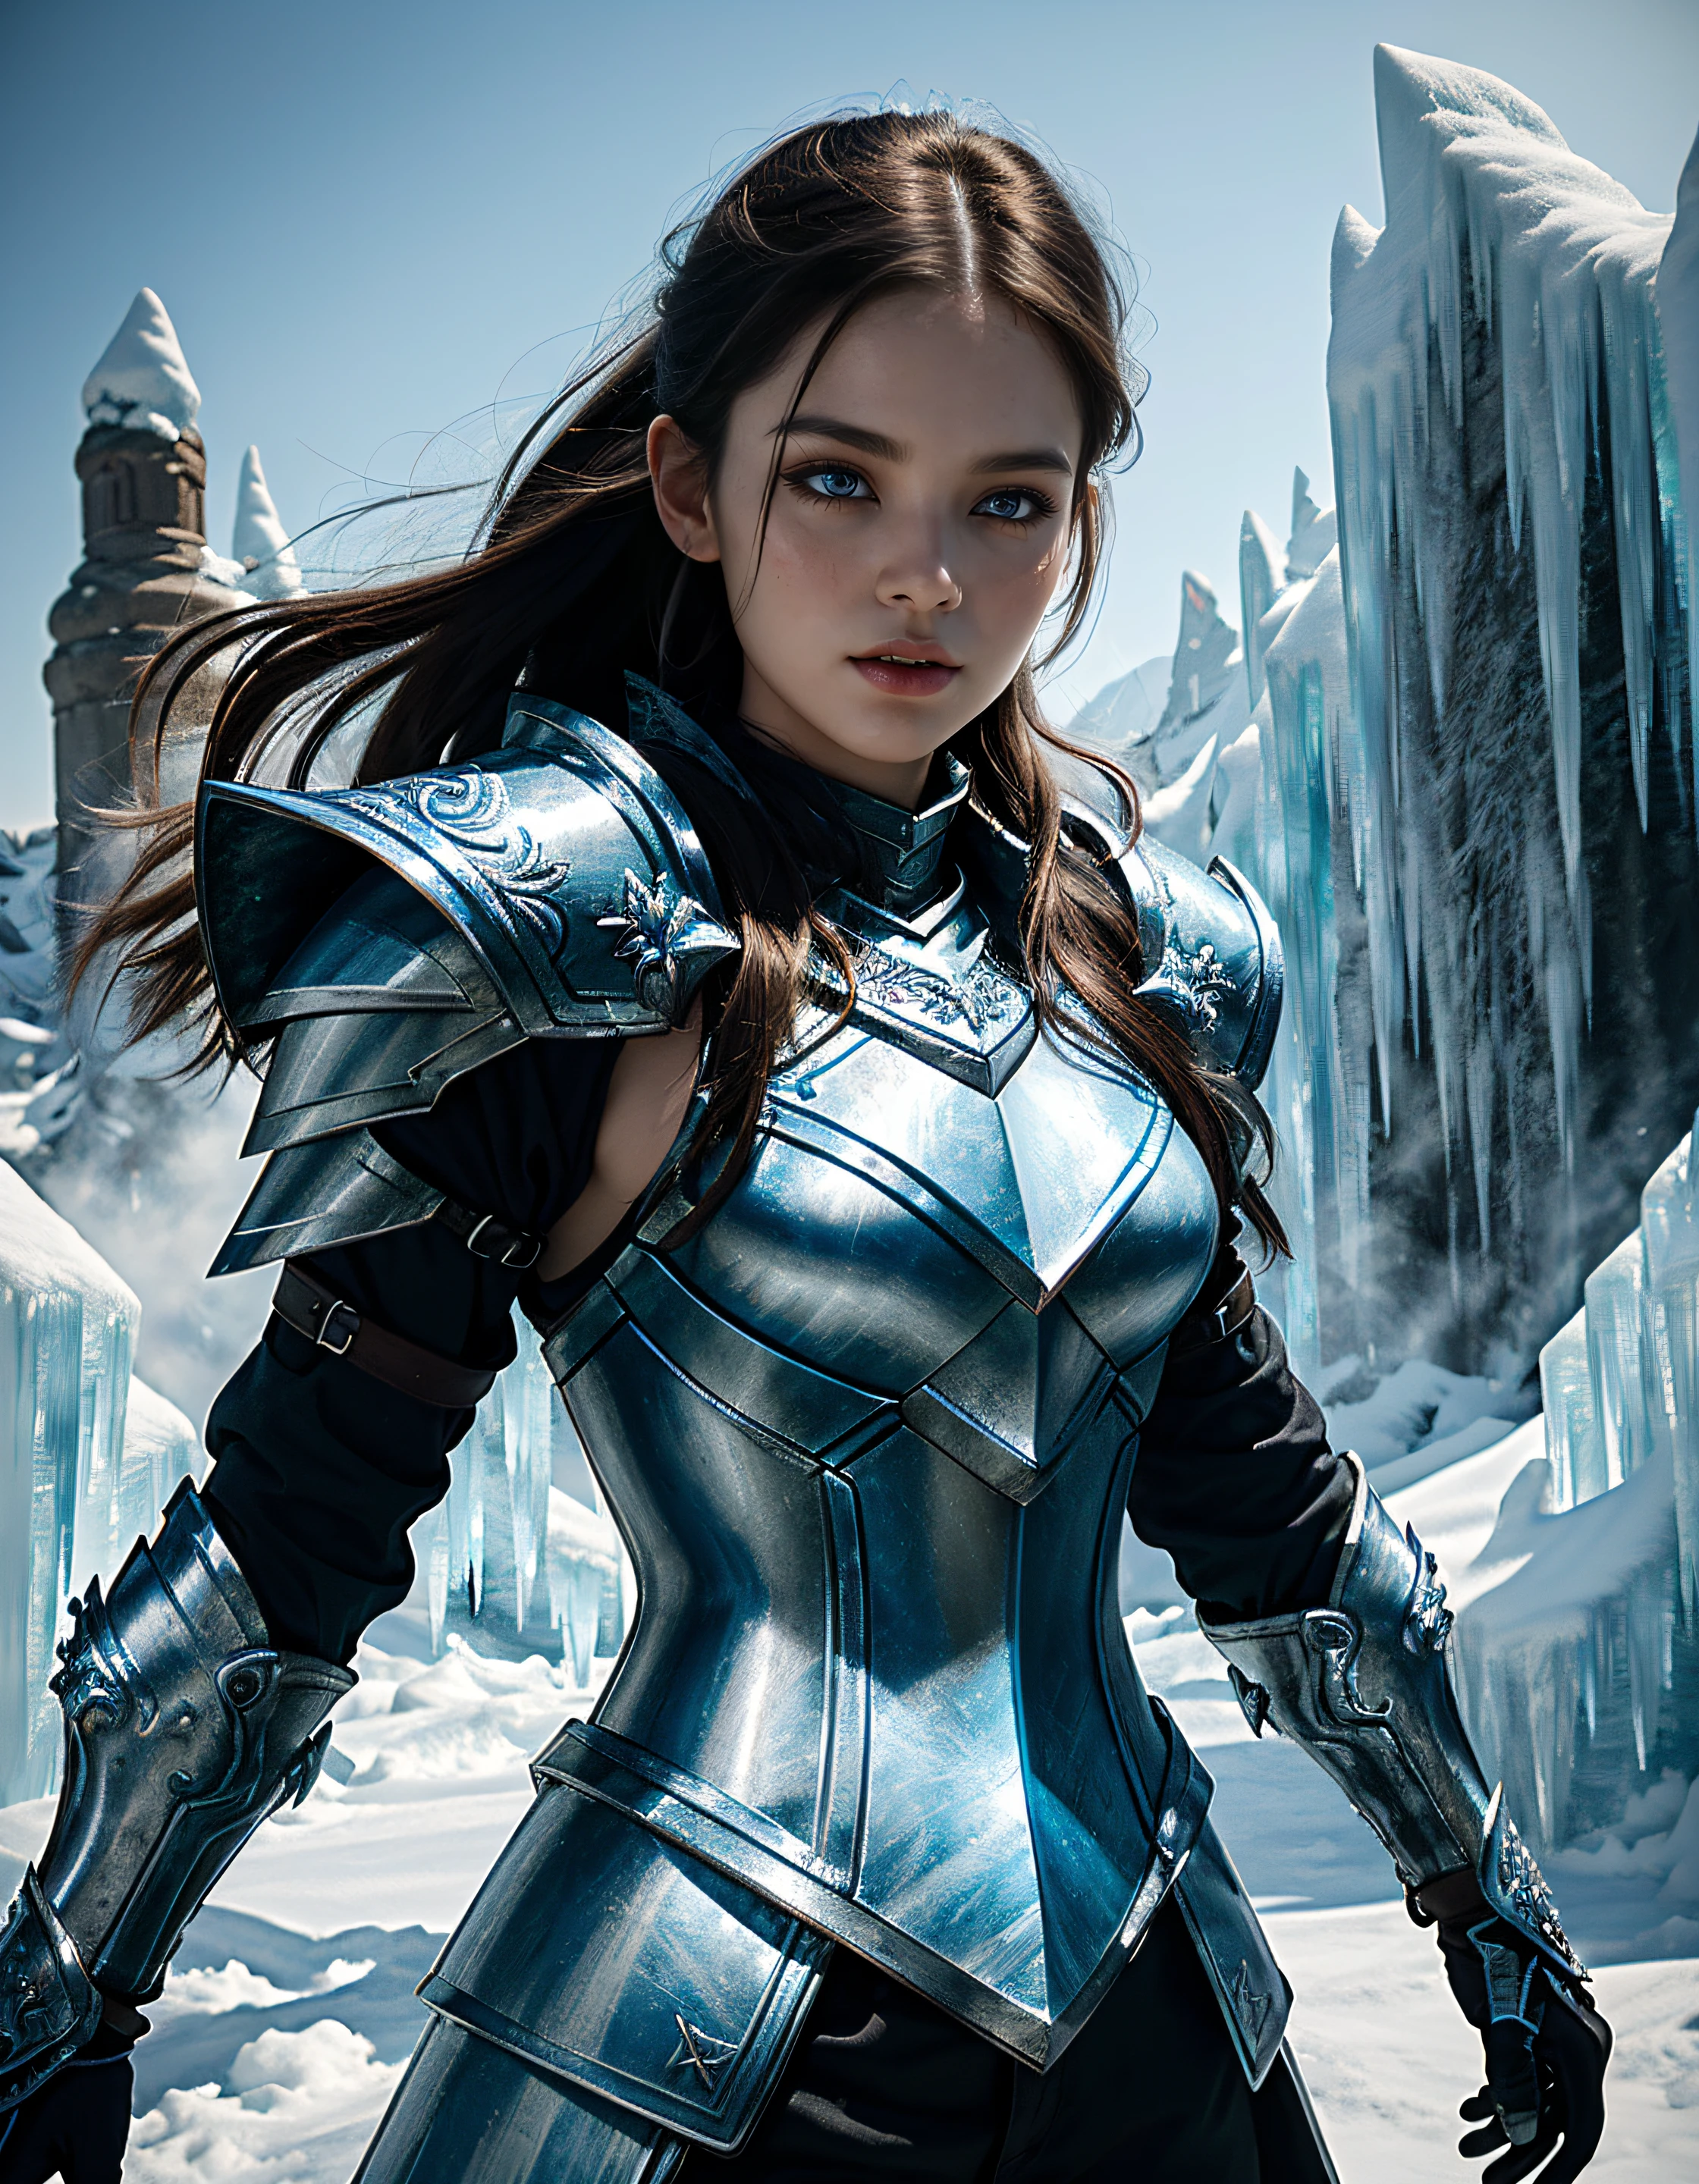 (obra maestra:1.3), alta resolución, mejor calidad, (extremadamente detallado, Ilumina el área en el fondo., alta definición, 8K, extremadamente intrincado:1.3), (tiro de vaquero), cuadro, 1 chica, dragón de hielo, con el pelo largo y blanco, blue eyes, (((hielo, se forman en el cuerpo, Formación de armadura:1.2))),(armadura de hielo:1.5),hielo, (espada de hielo:1.2),Runas resplandecientes_Blue, Runas en el estómago (Dragón de hielo al fondo), (alta definiciónR, Hiperdetalle:1.2).